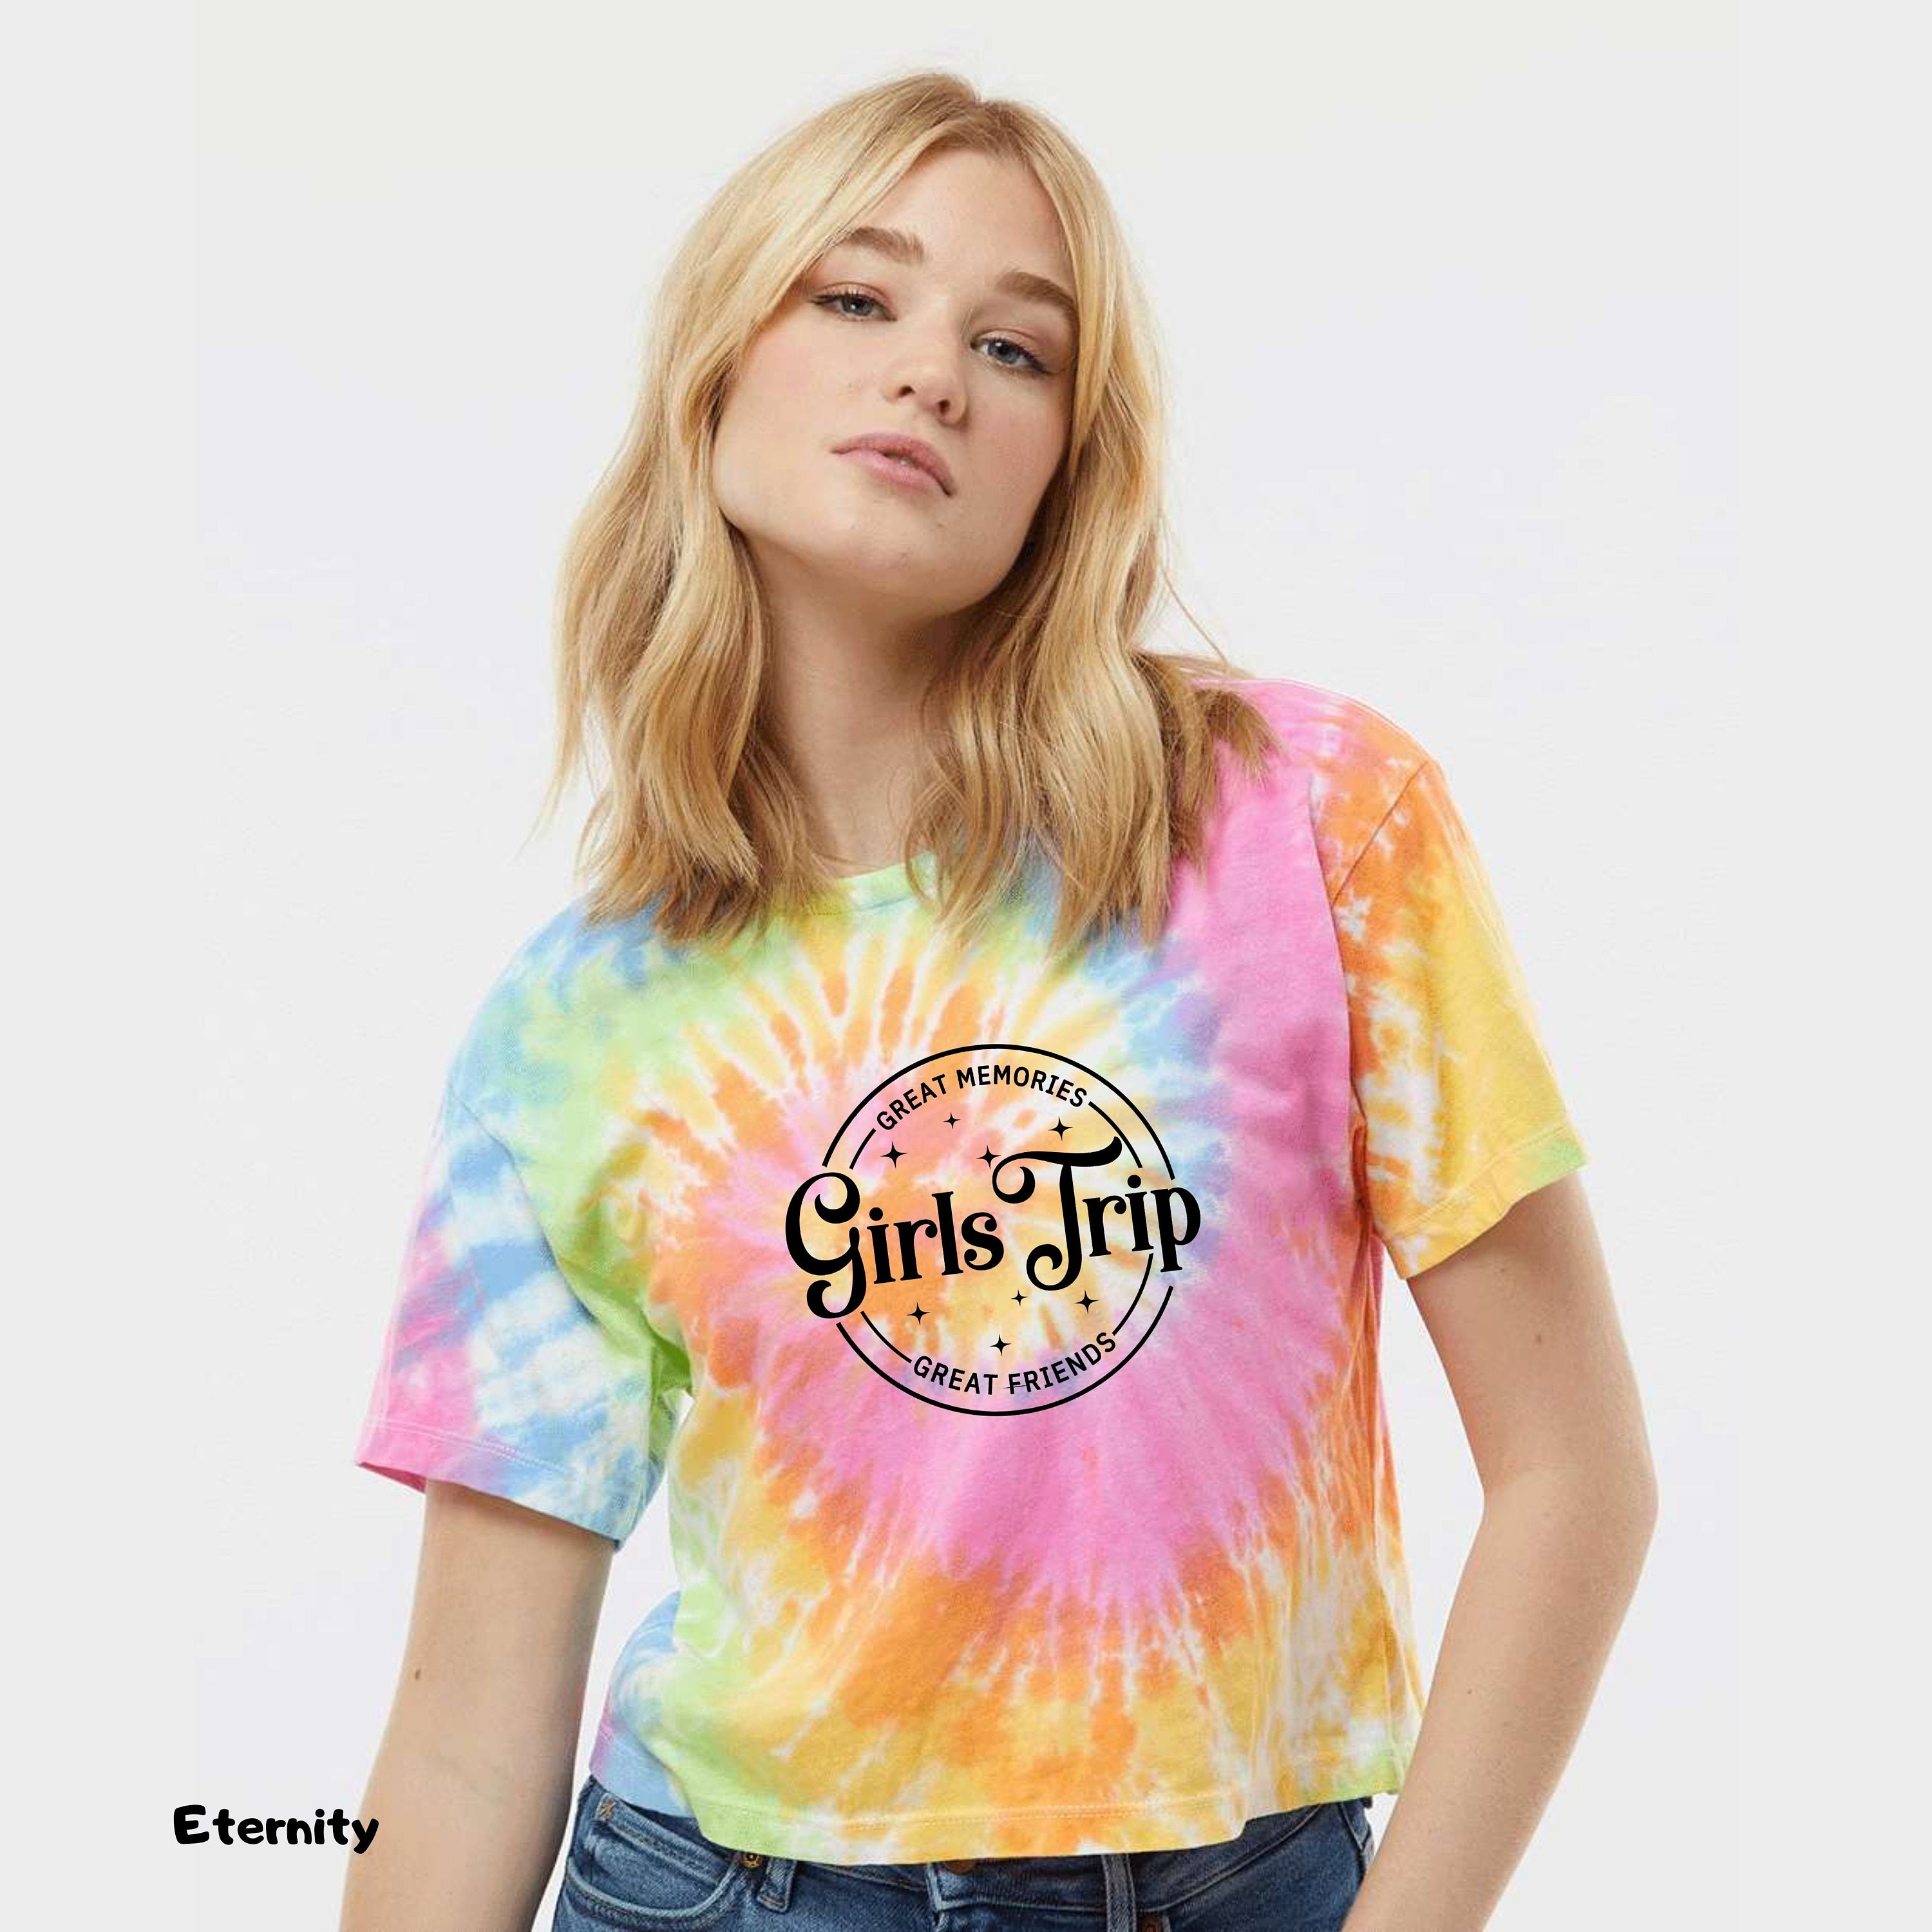 Discover Girls Trip Tie Dye Crop Top Shirt,Summer Vacation,Women Summer Tops,Girls Beach Shirt,Girls Trip Tshirt,Summer Shirt,Vacay Mode,Girls Travel